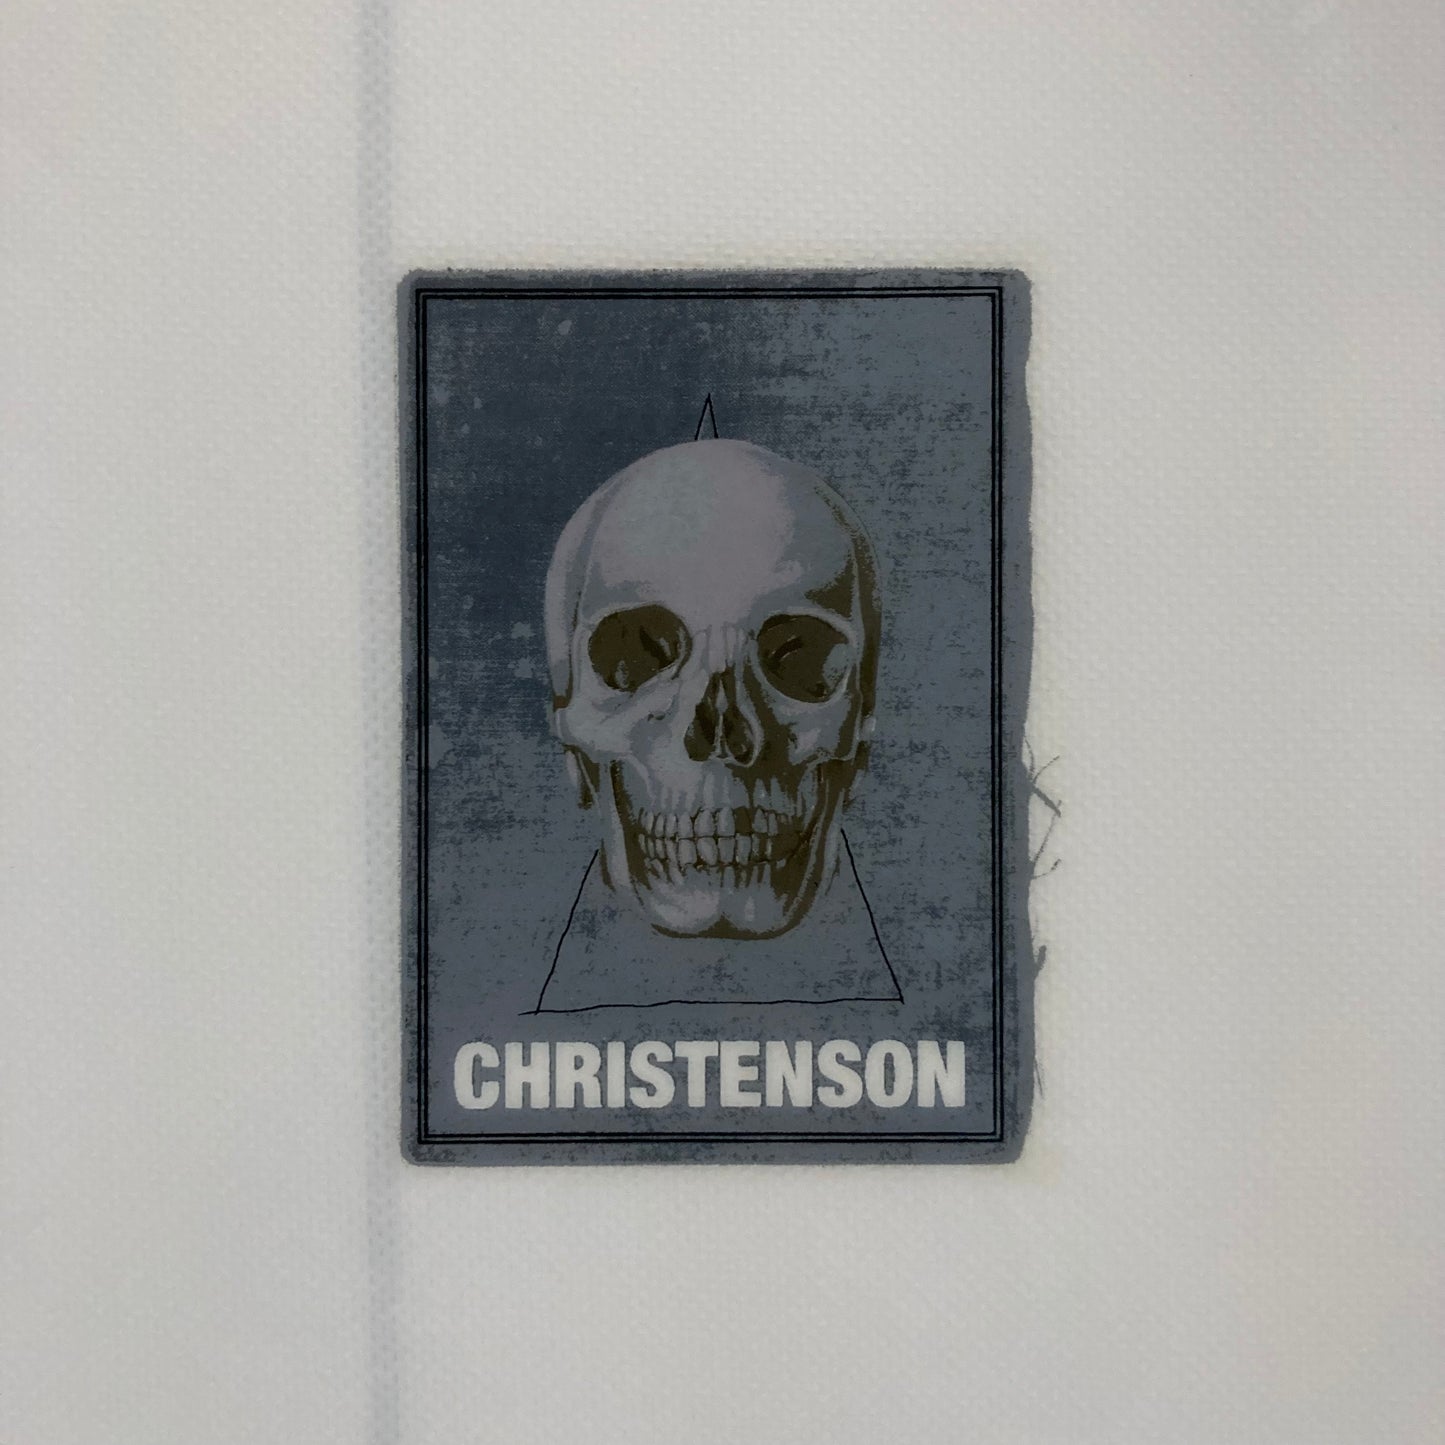 Christenson - 5'4 Lane Splitter